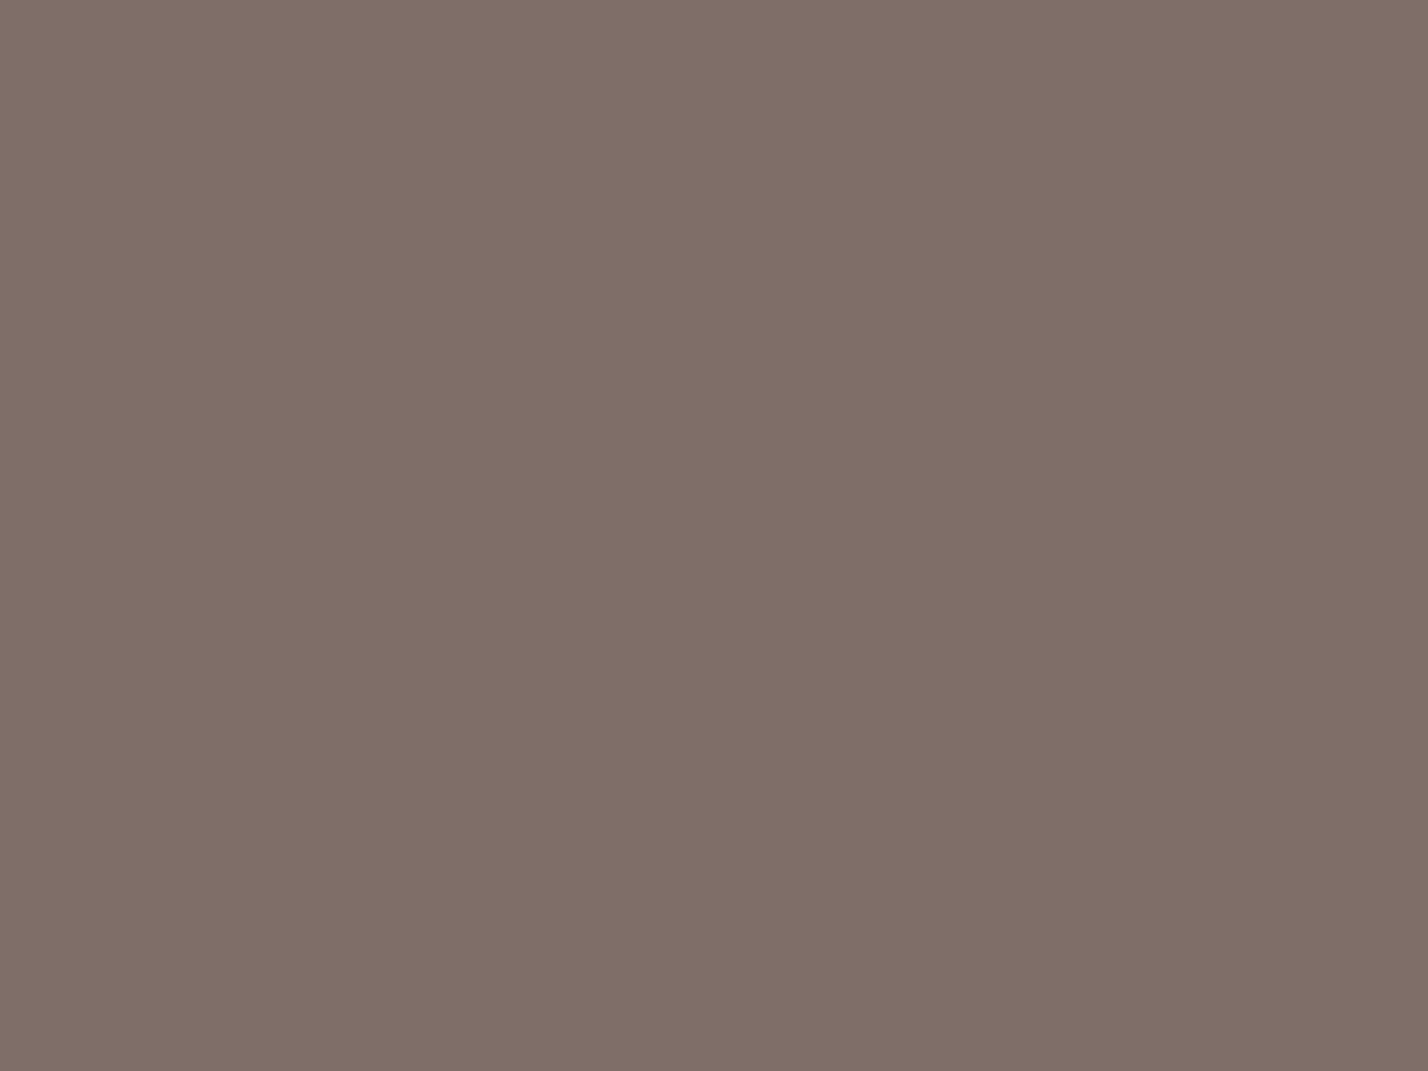 Михаил Врубель. Демон сидящий (фрагмент). 1890. Государственная Третьяковская галерея, Москва